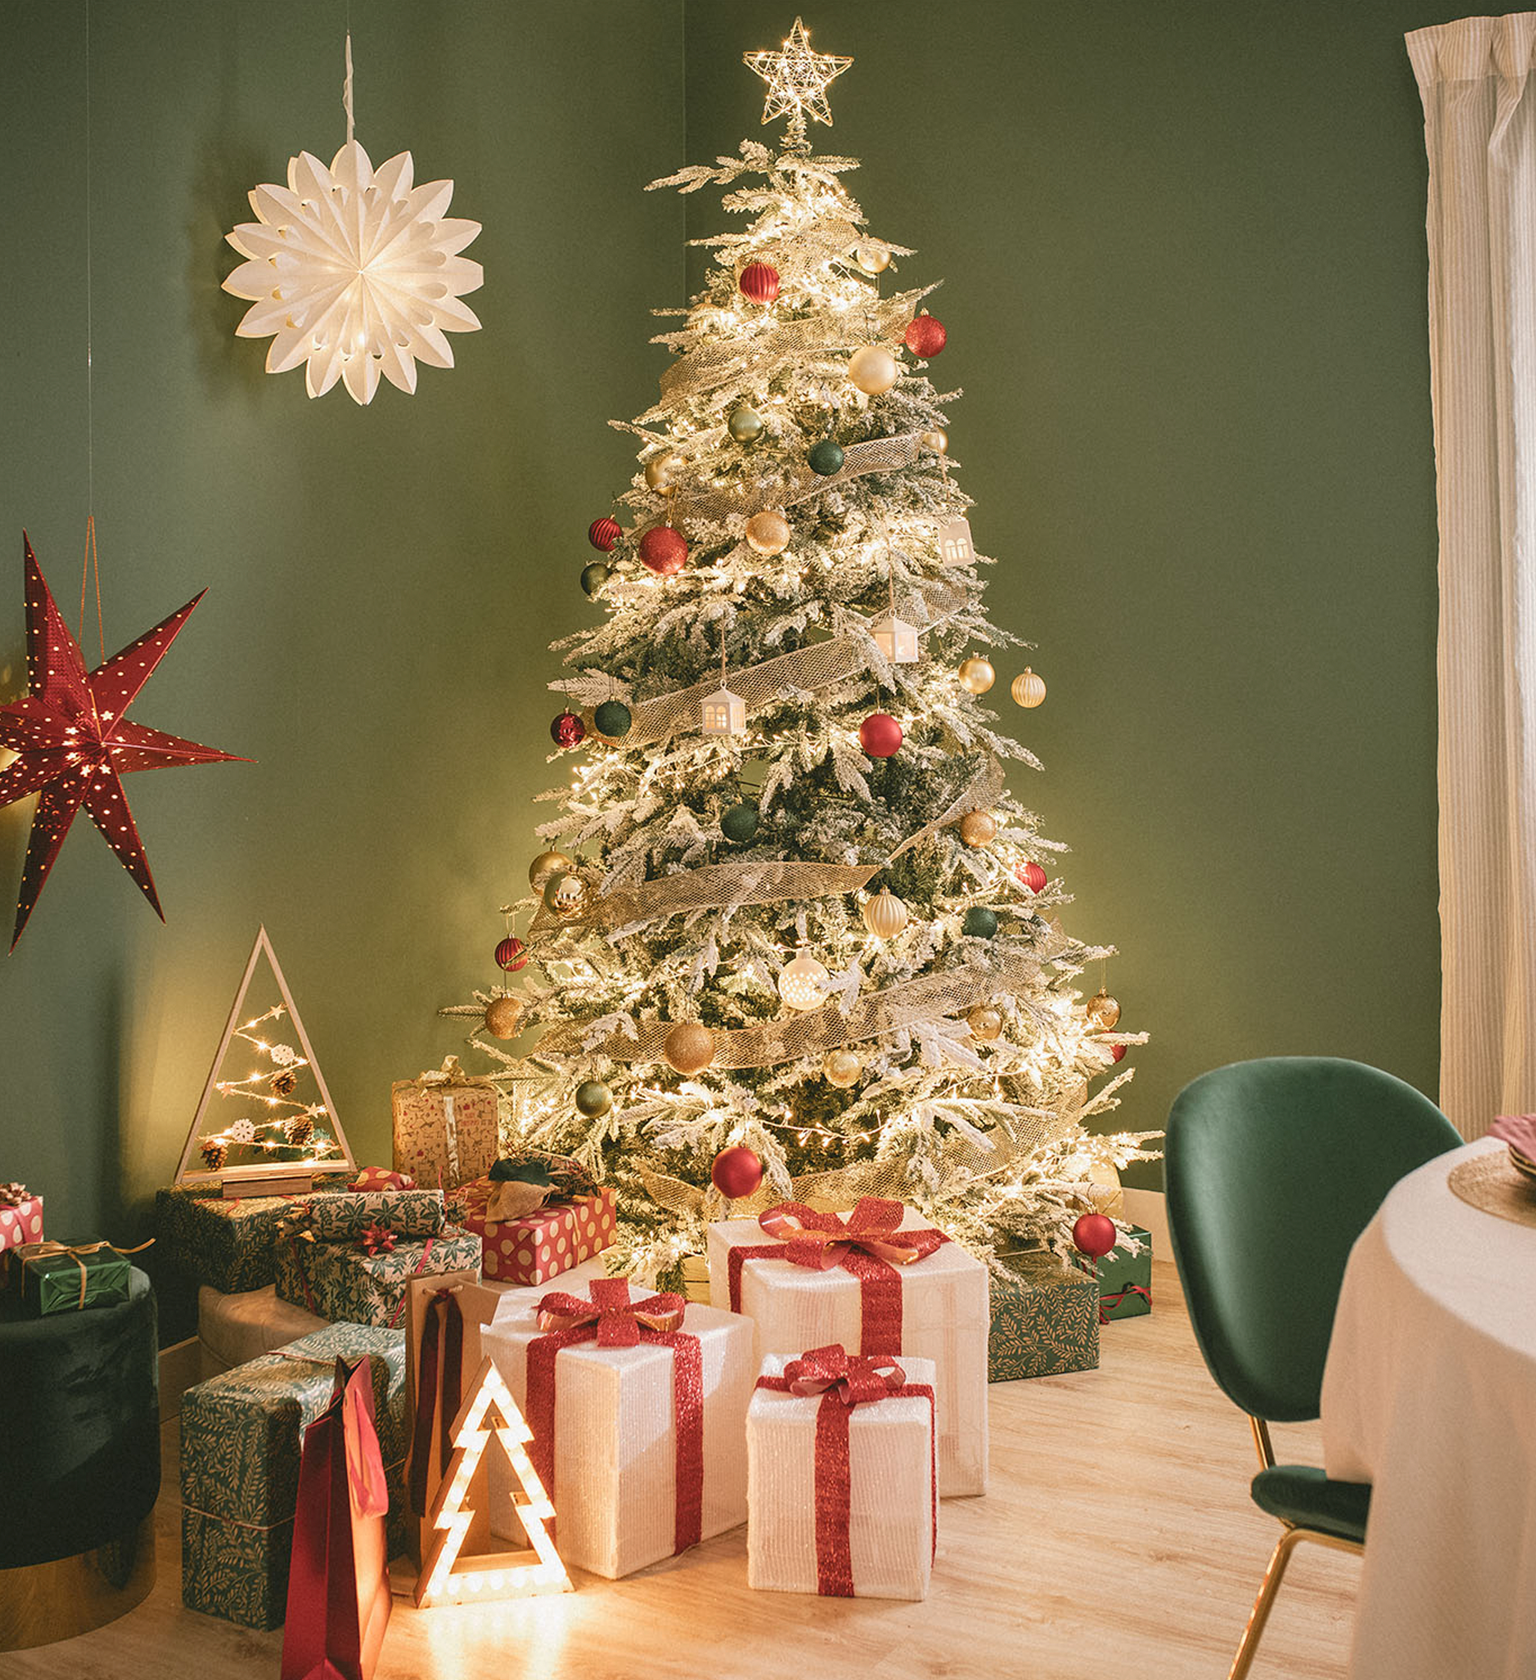 Fotografia de uma árvore de Natal complementada com iluminação LED